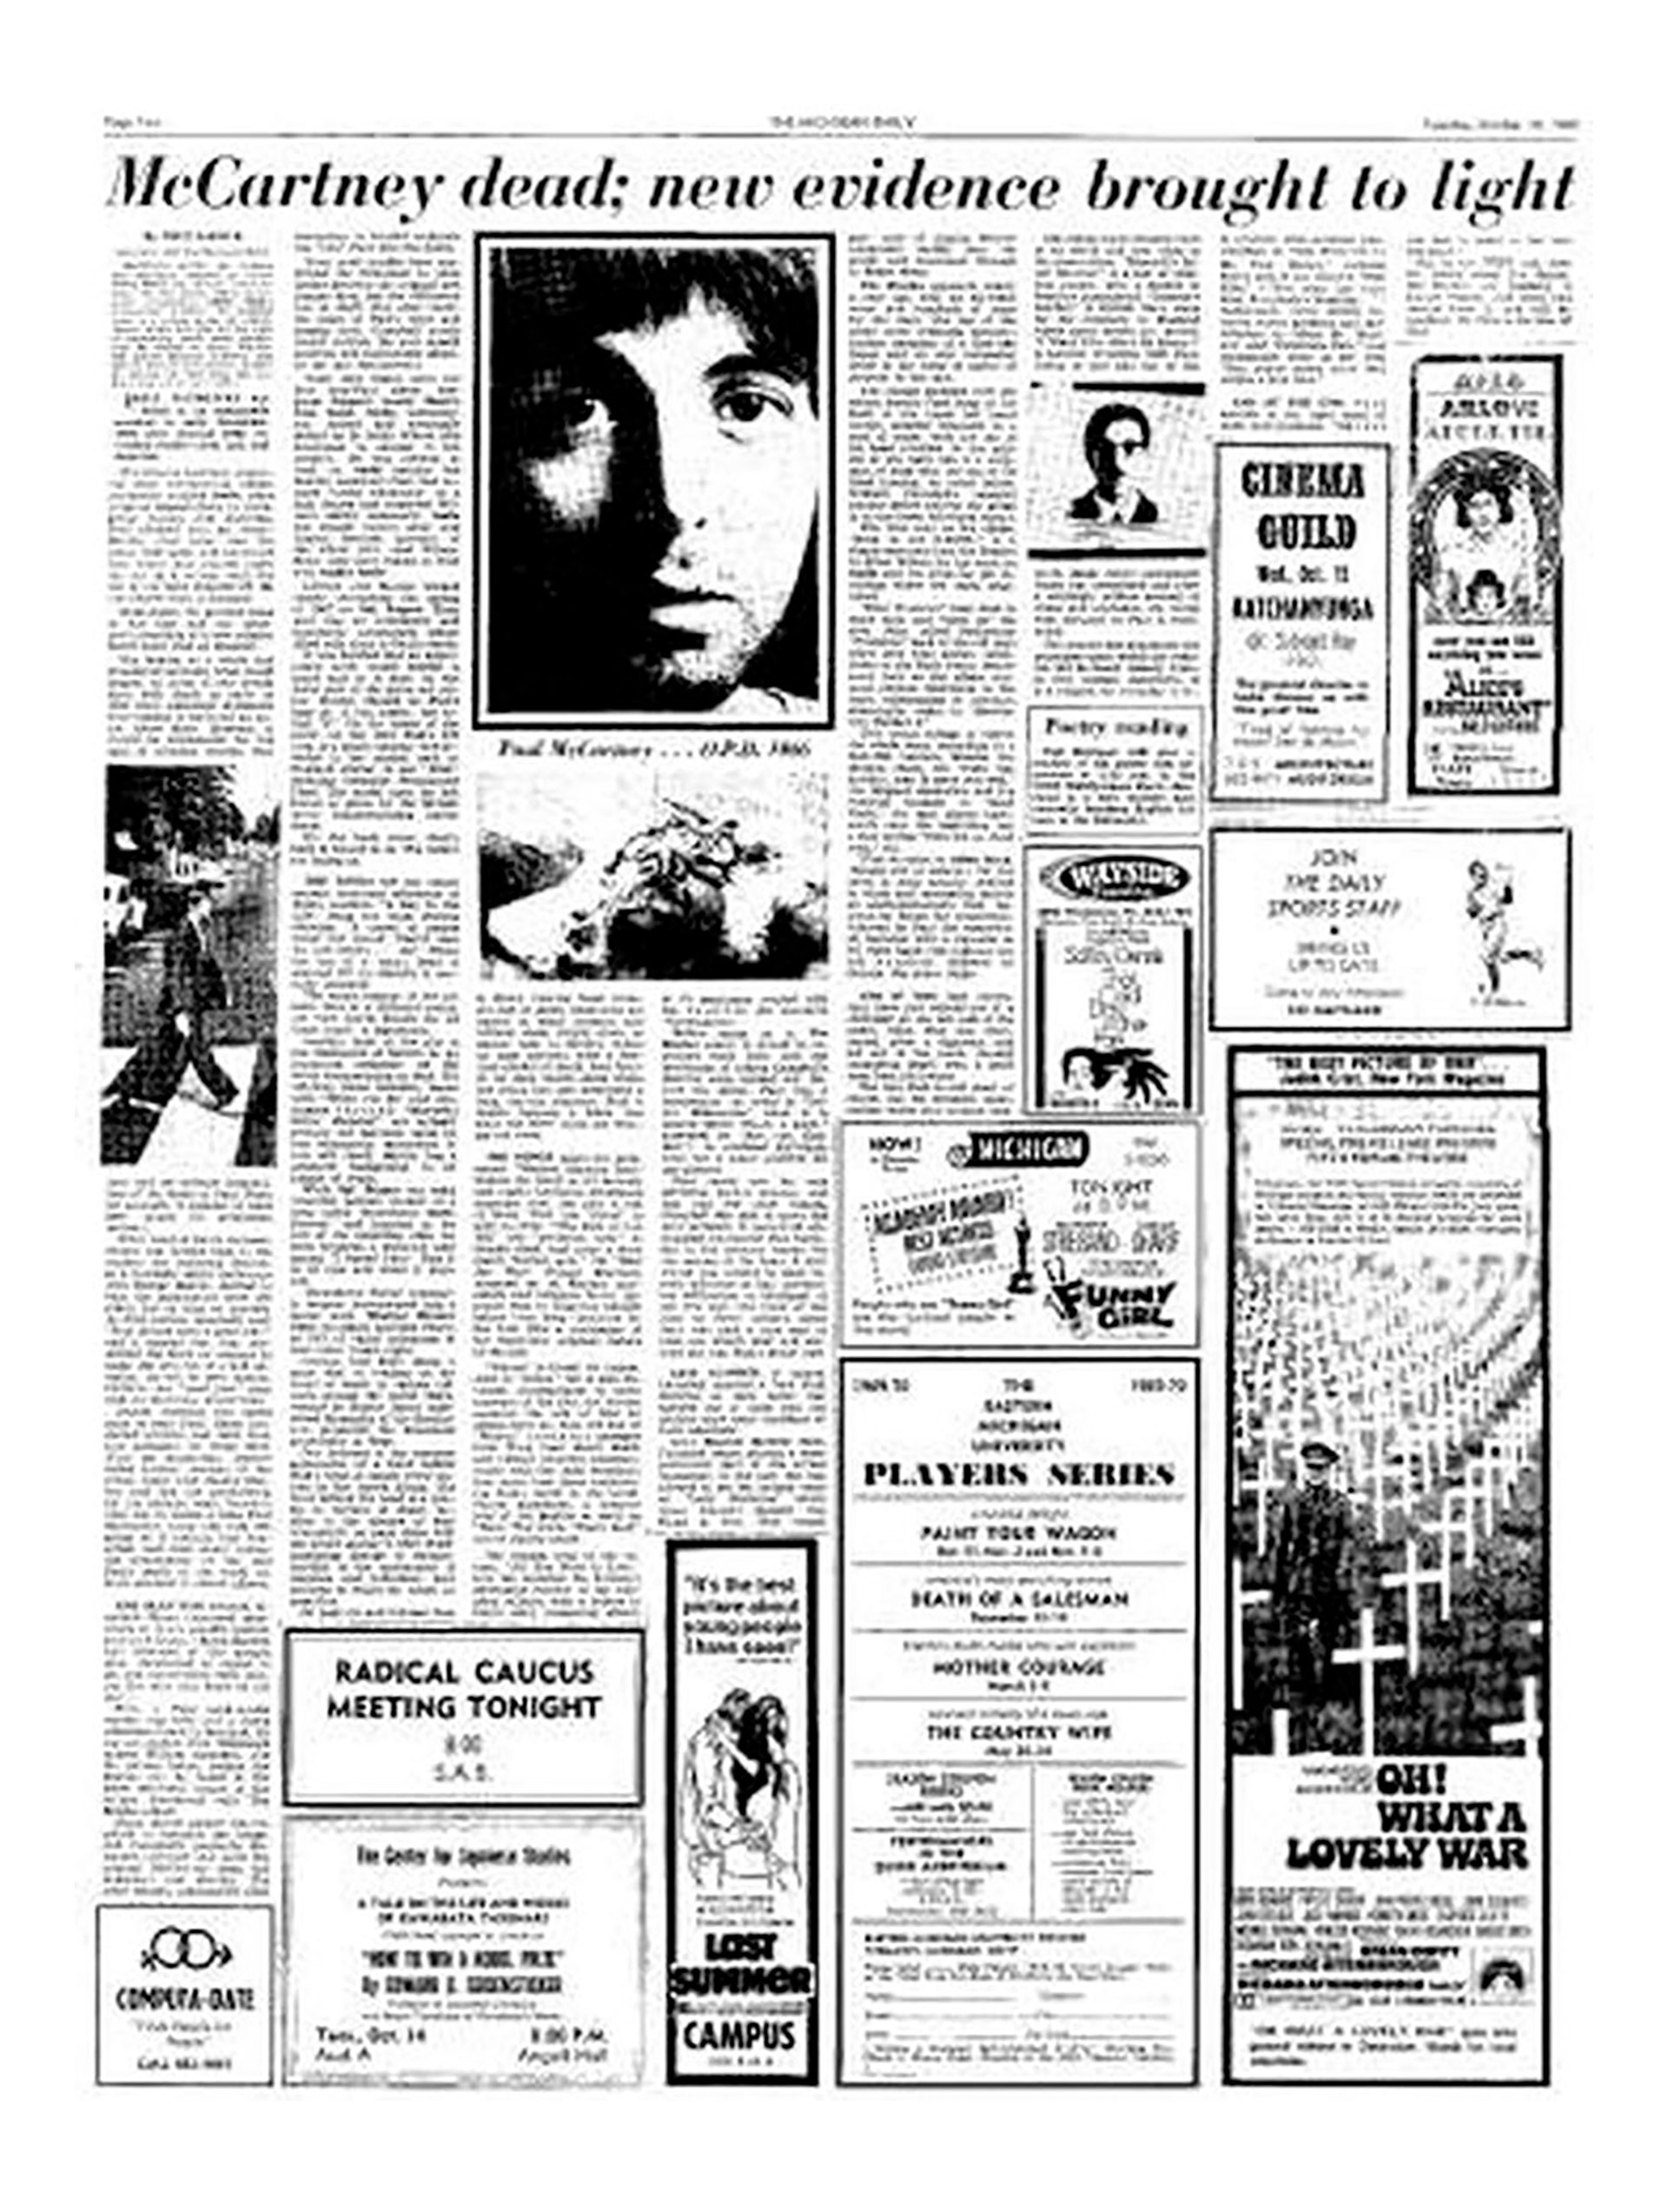 El diario Michigan Today publicó: "McCartney muerto: nuevas evidencias salen a la luz"